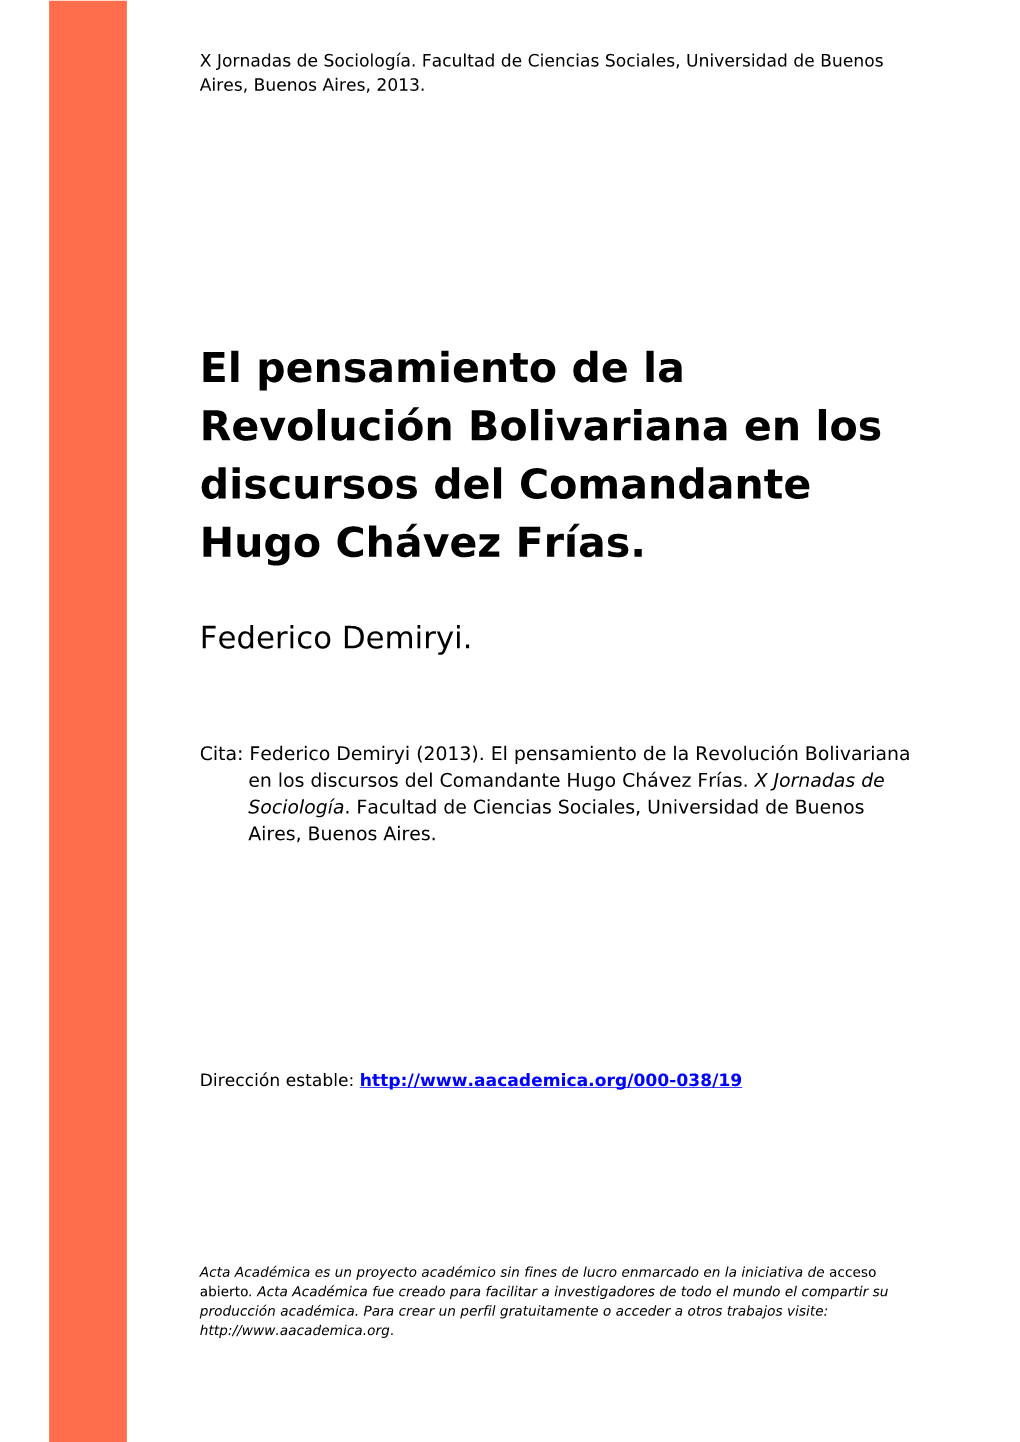 El Pensamiento De La Revolución Bolivariana En Los Discursos Del Comandante Hugo Chávez Frías